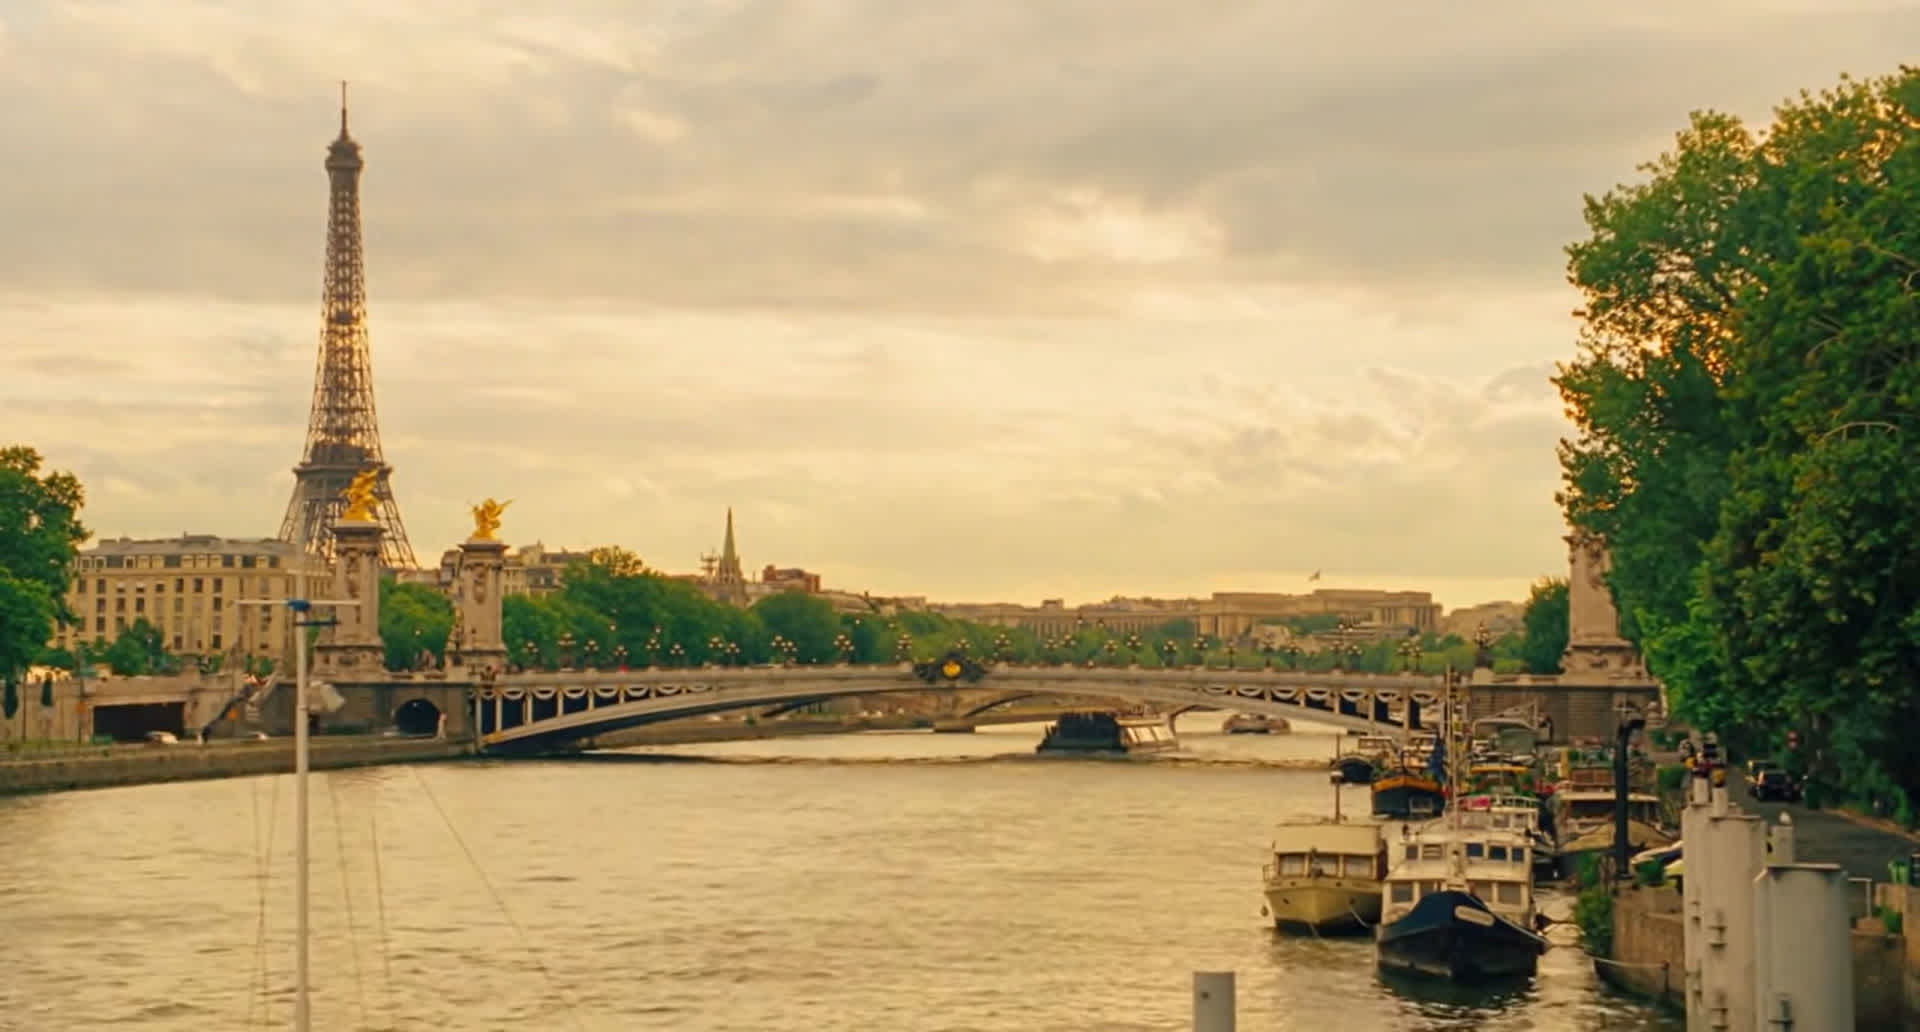 Sceneggiatura Midnight in Paris - Frame del film